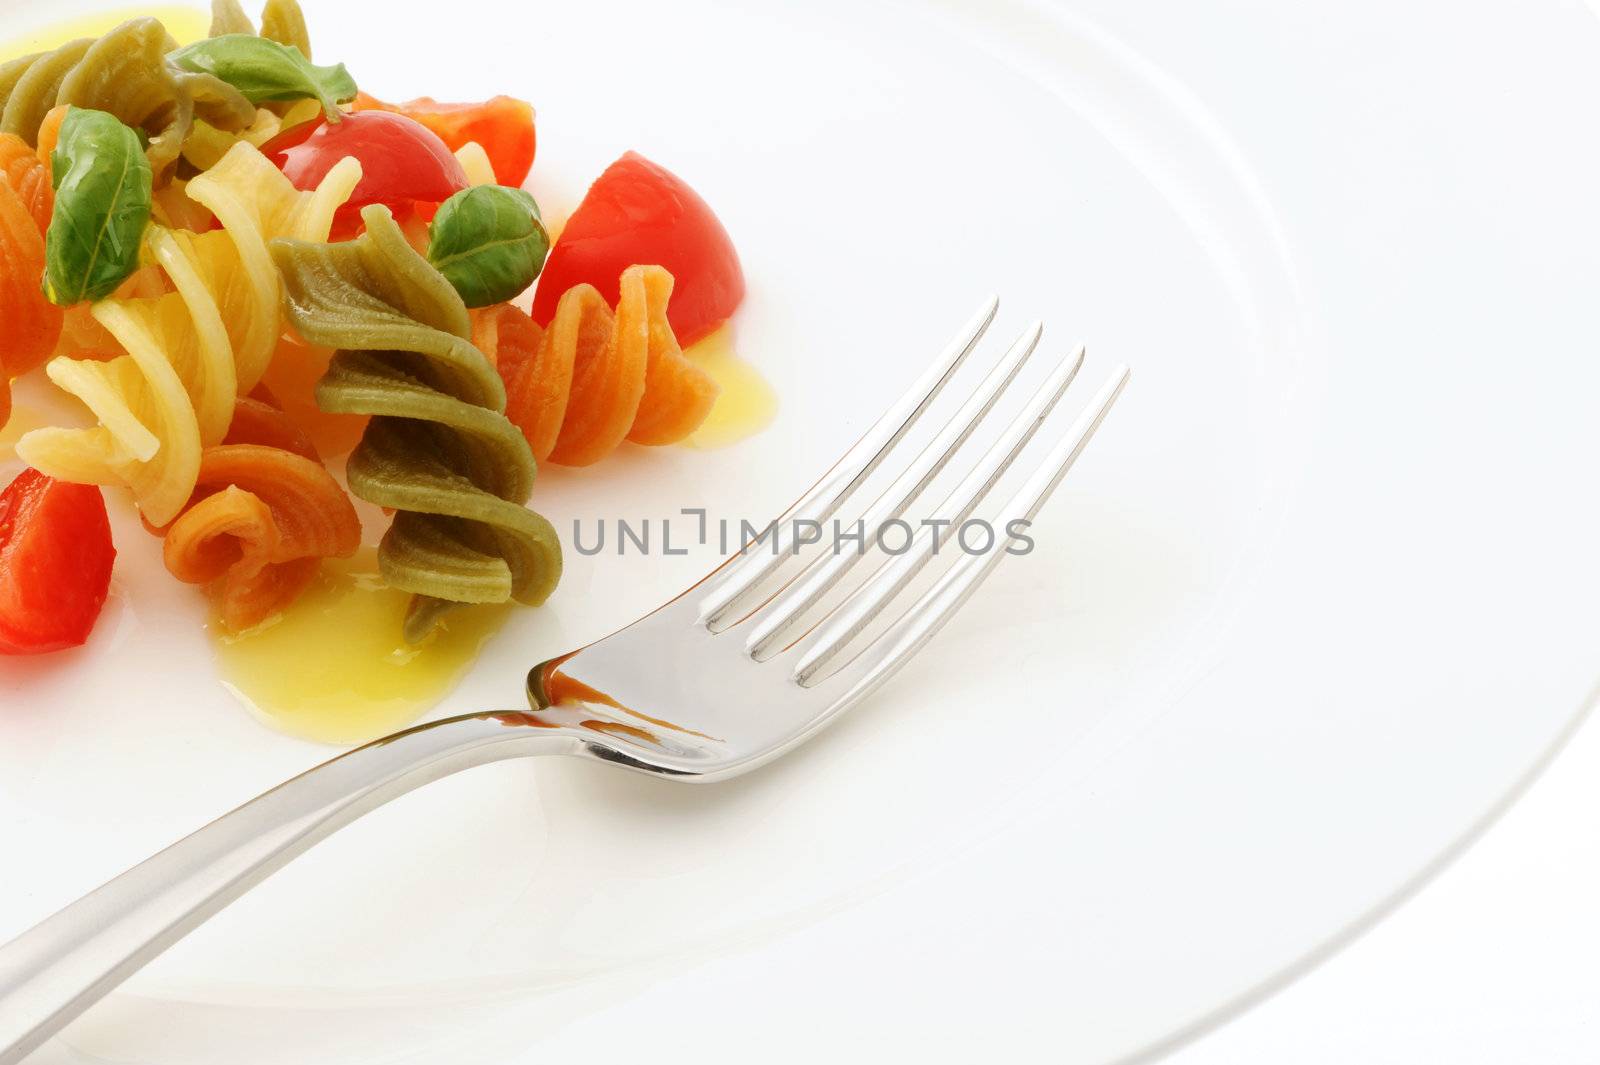 Italian pasta dish